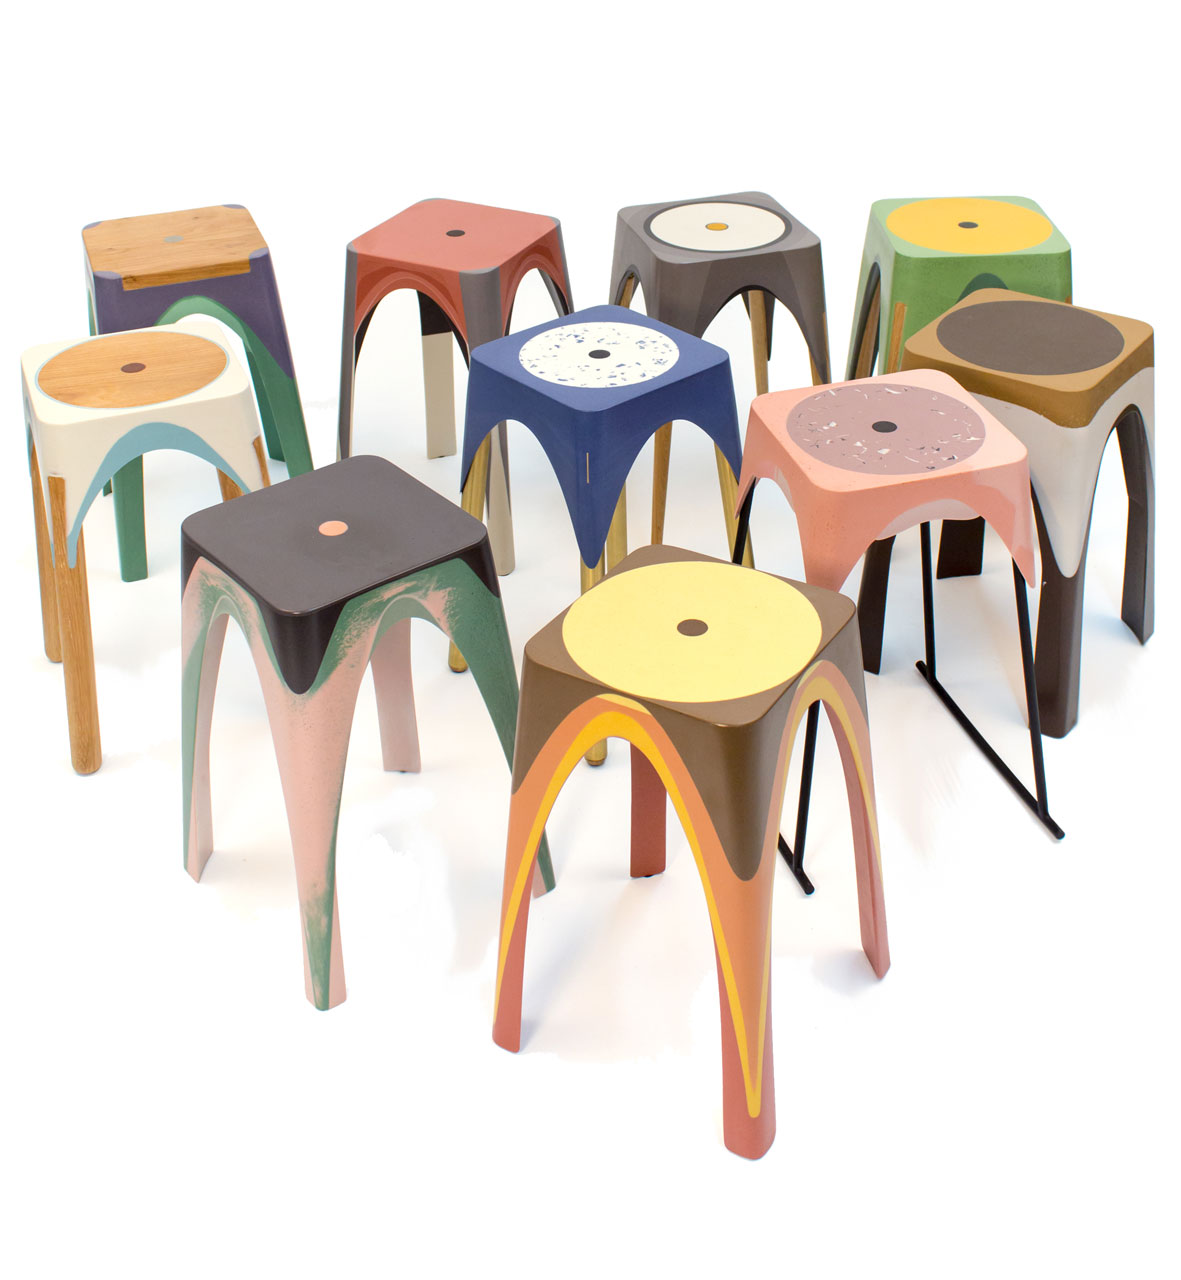 Metall wood and resin stool